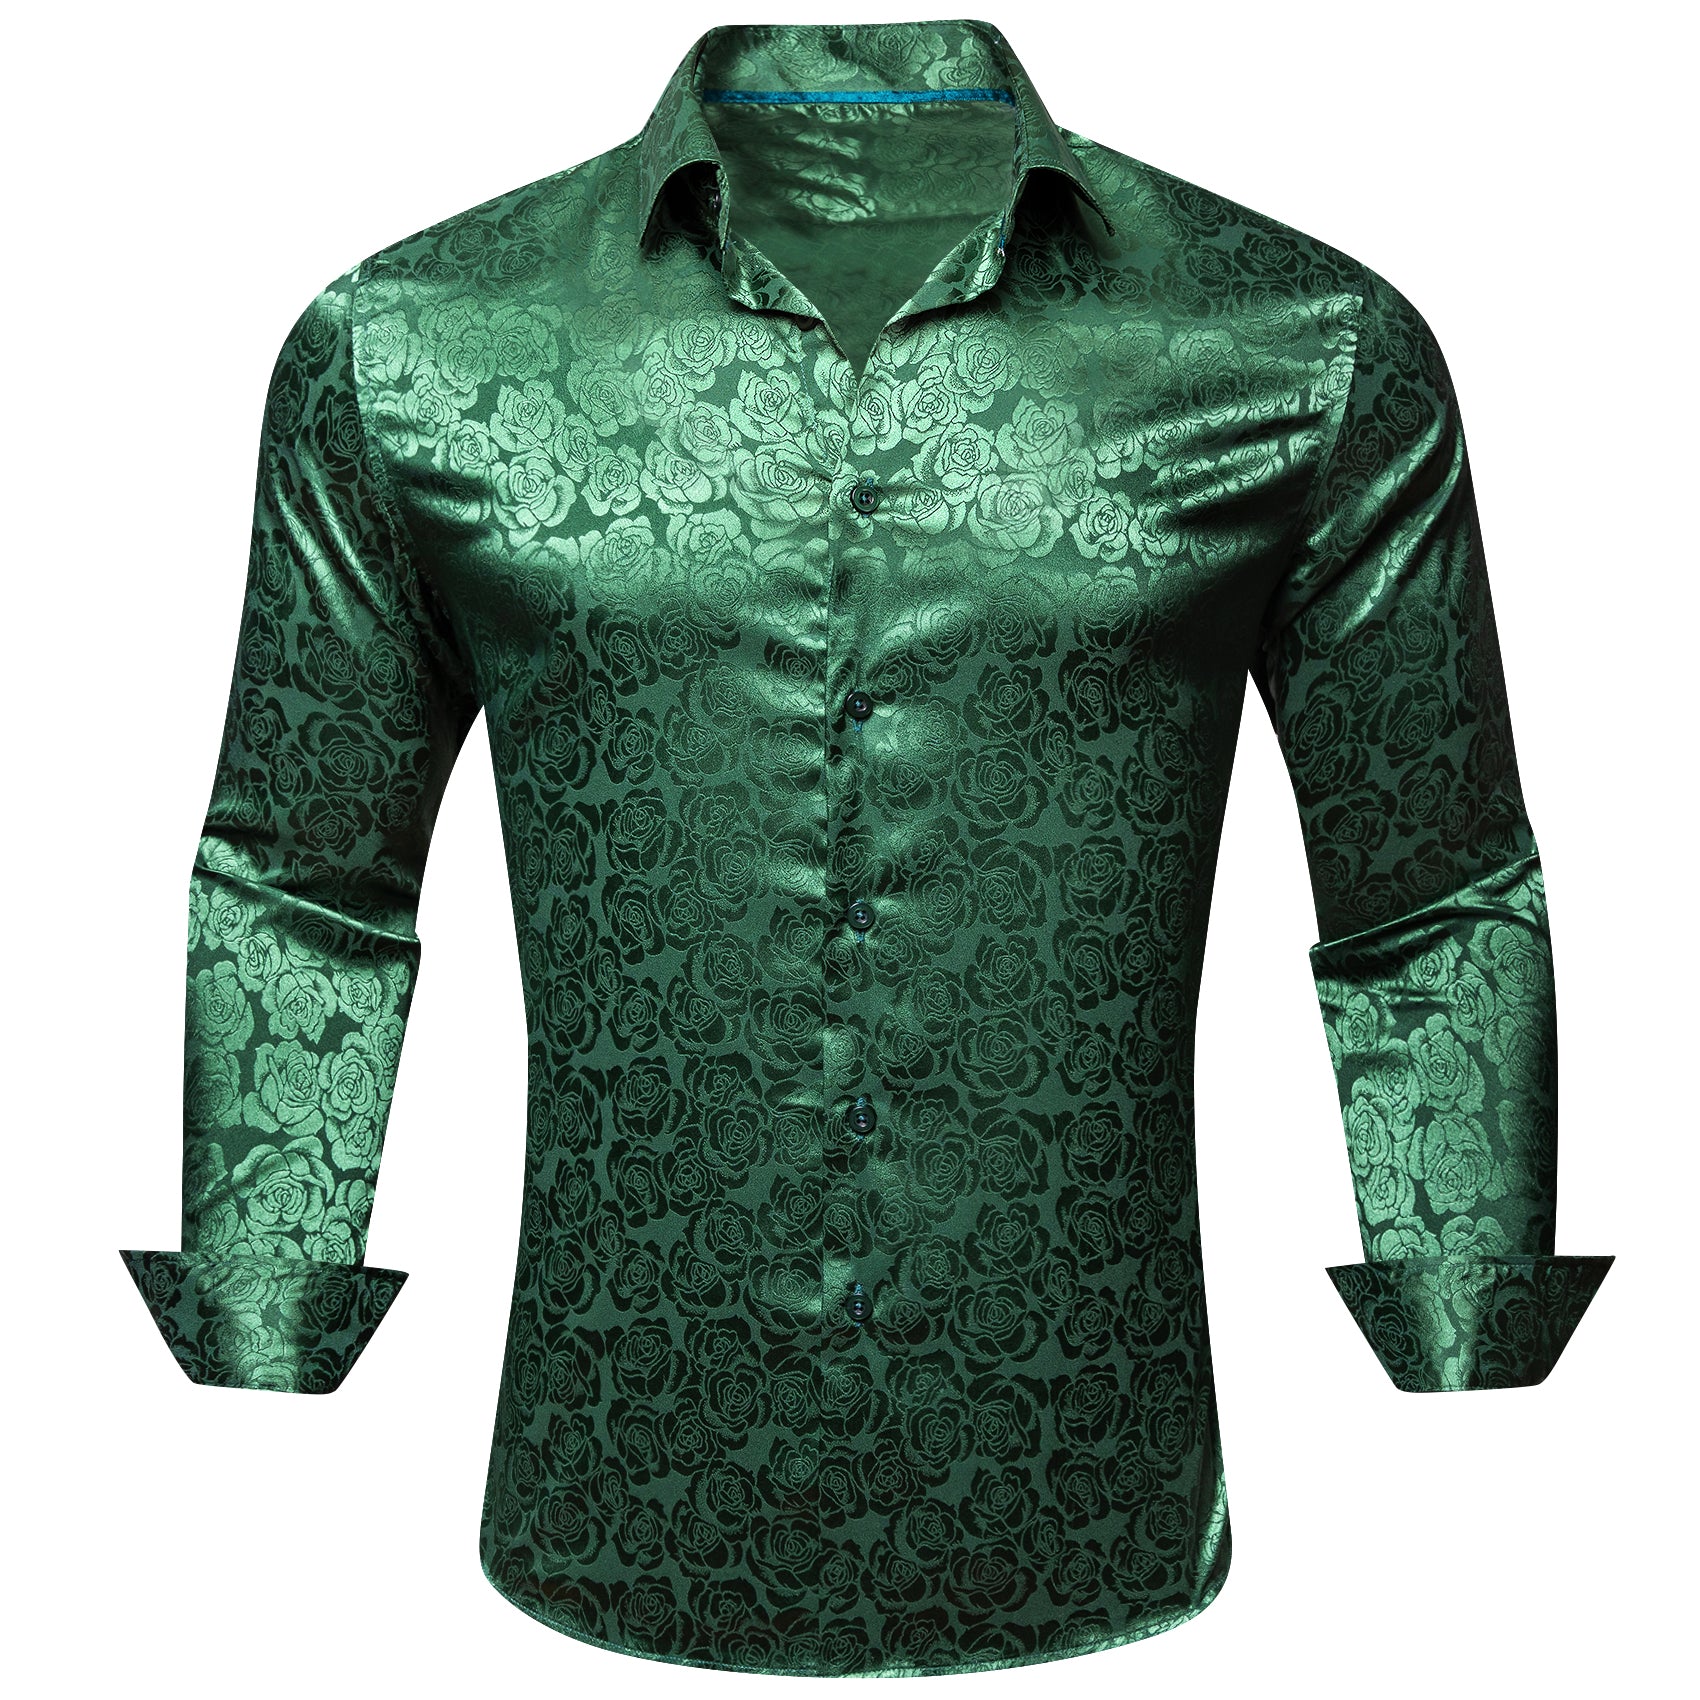 Barry.wang Beautiful Green Print Flower Silk Men's Shirt